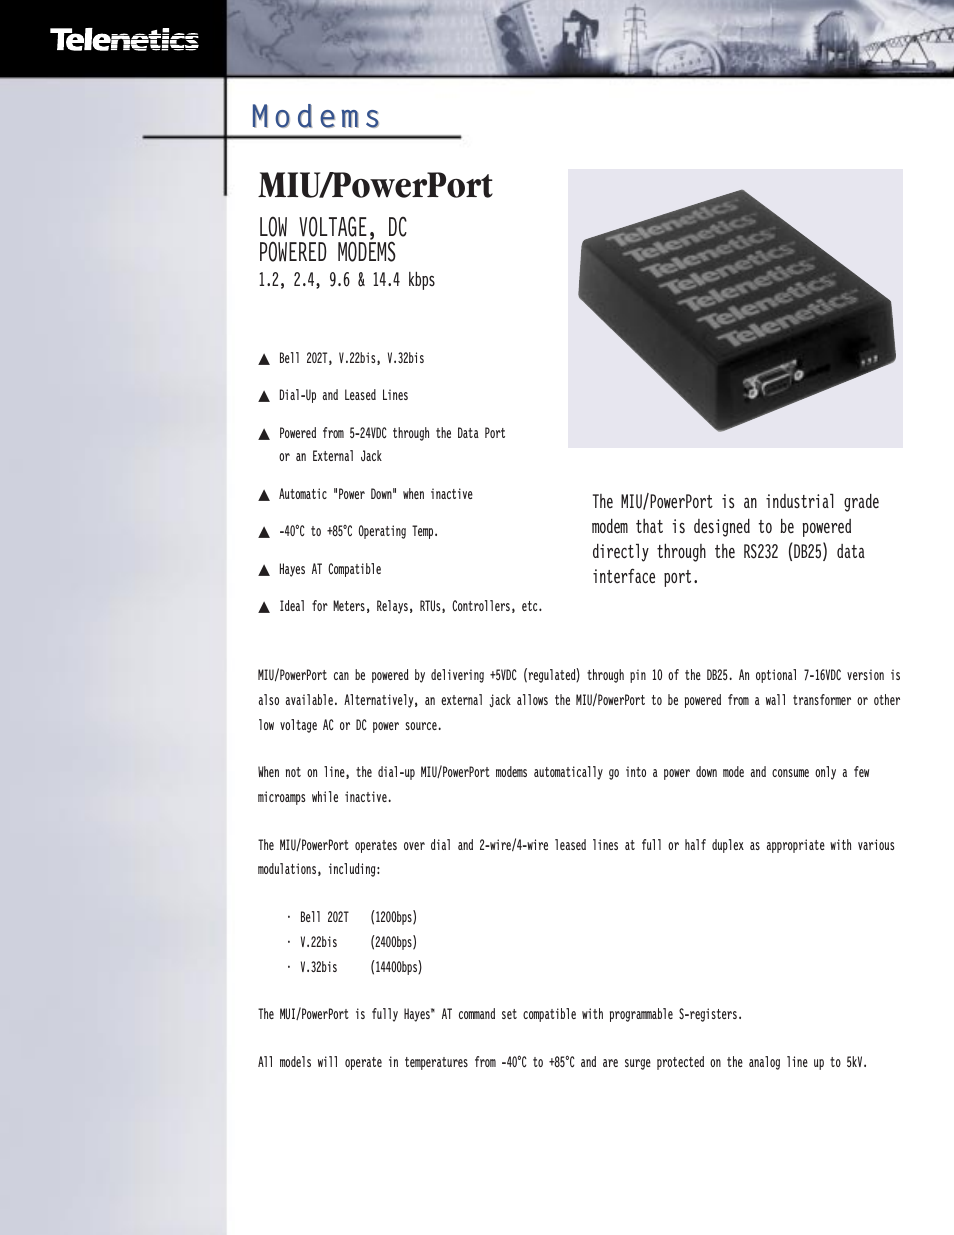 MIU/PowerPort Series 9.6